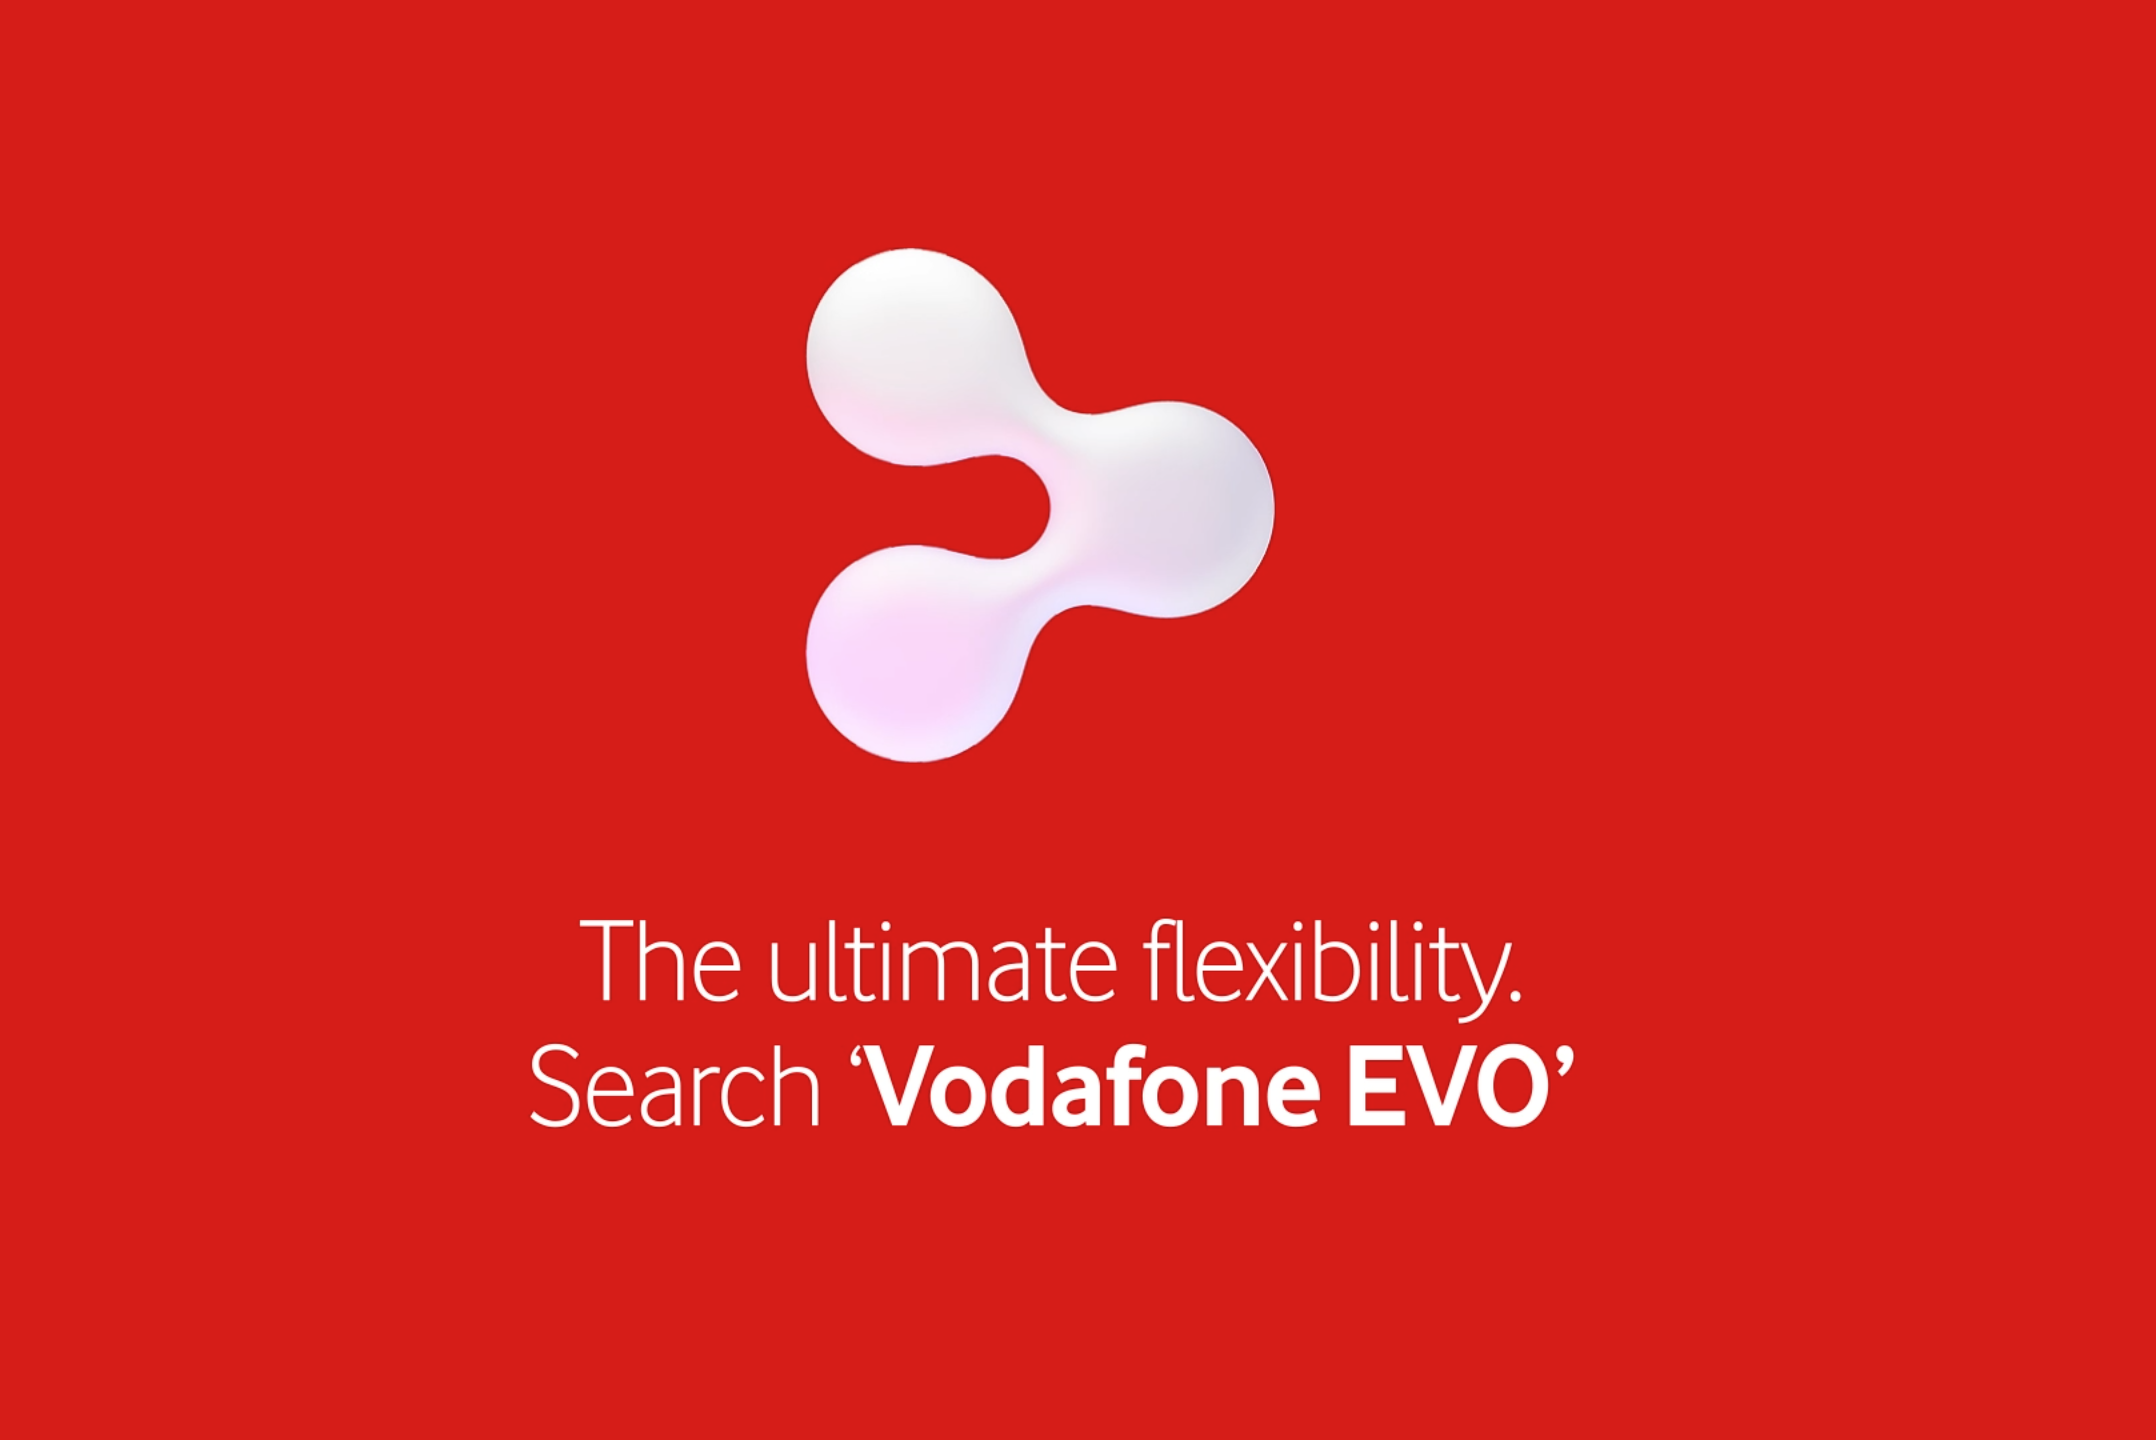 The ultimate flexibility. Search 'Vodafone EVO'